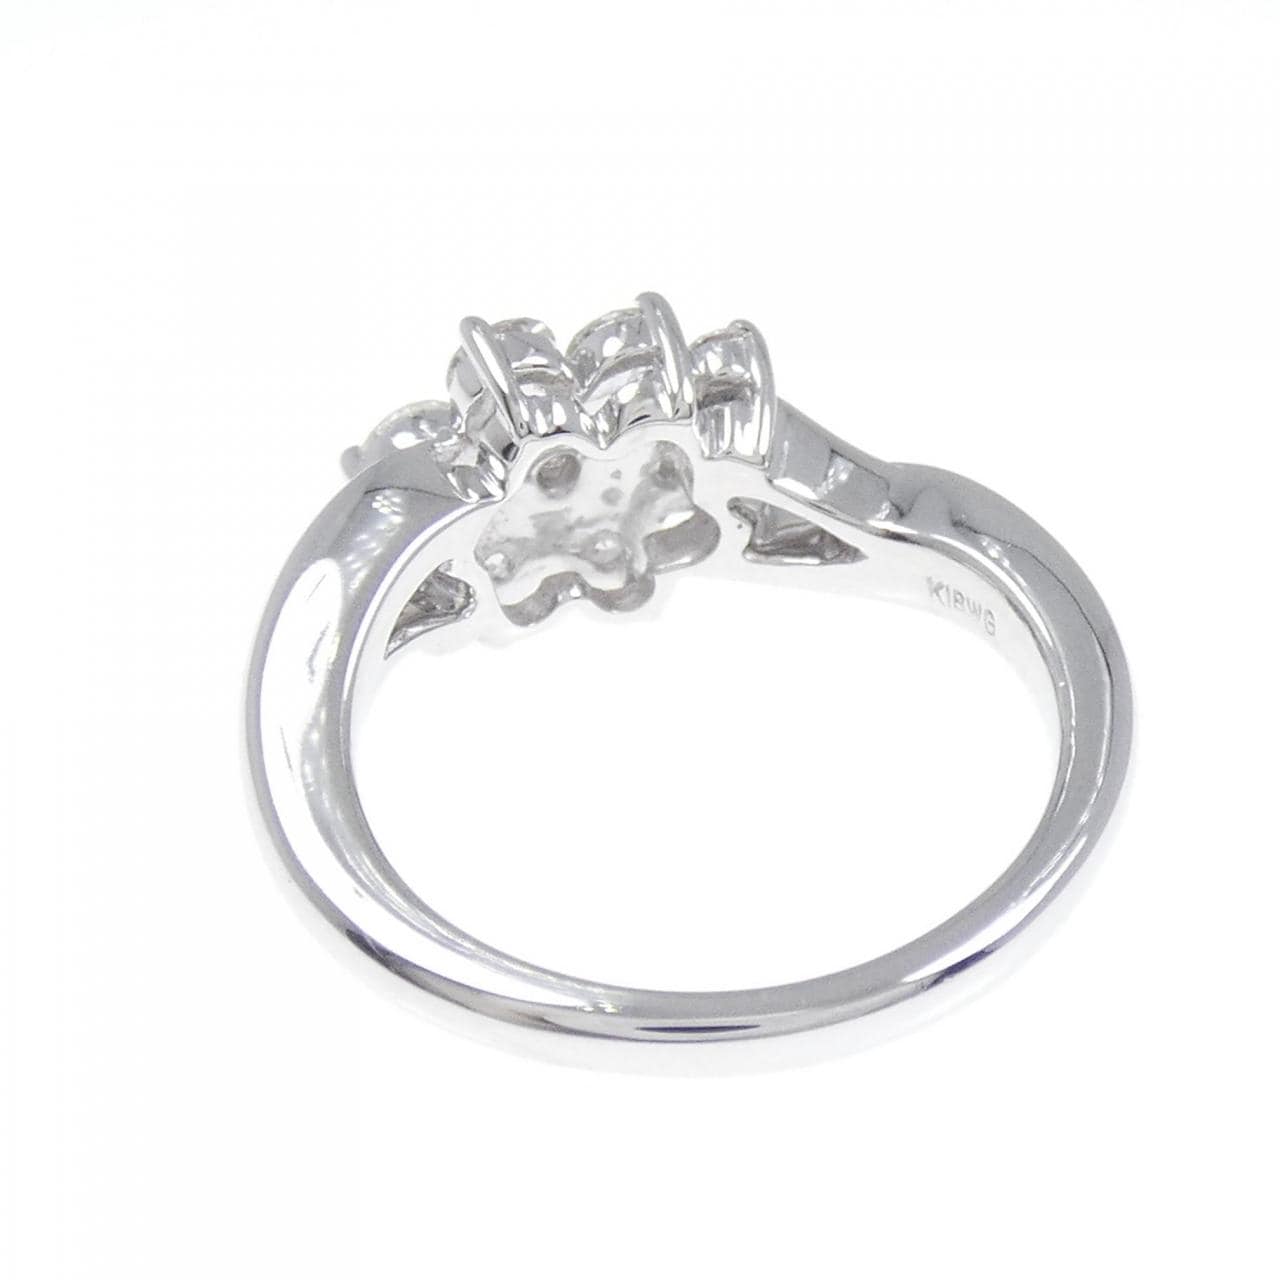 K18WG flower Diamond ring 1.06CT